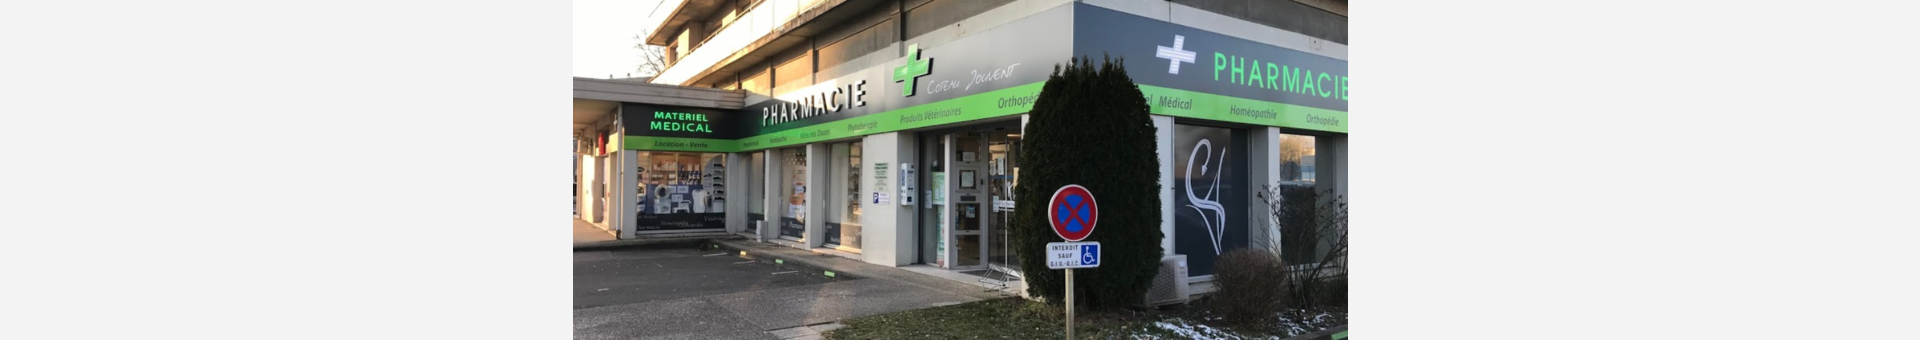 Pharmacie du Coteau Jouvent,Montbéliard